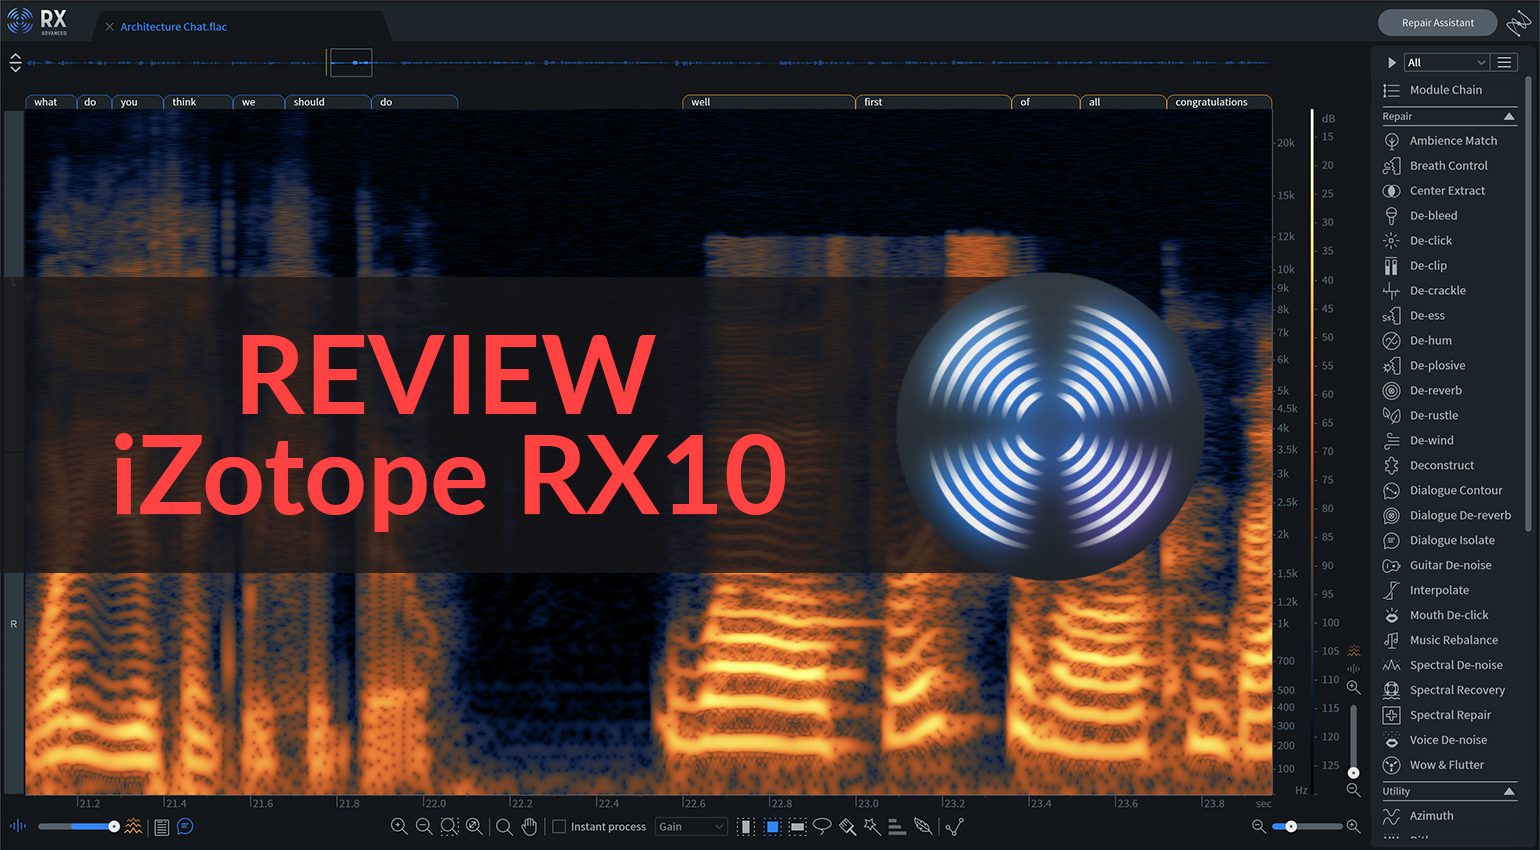 iZotope RX 10 Audio Editor Advanced 10.4.2 free